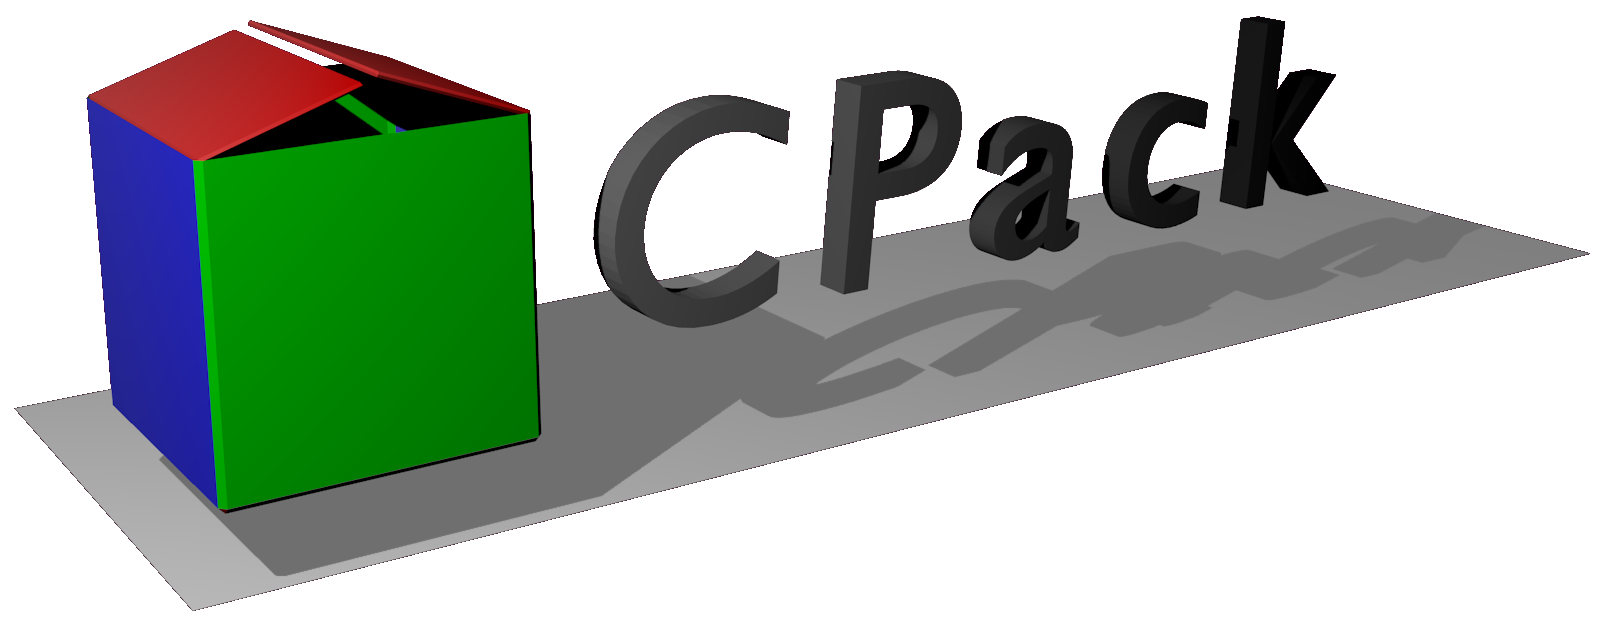 CPack-logo-3D-opened-v2.png